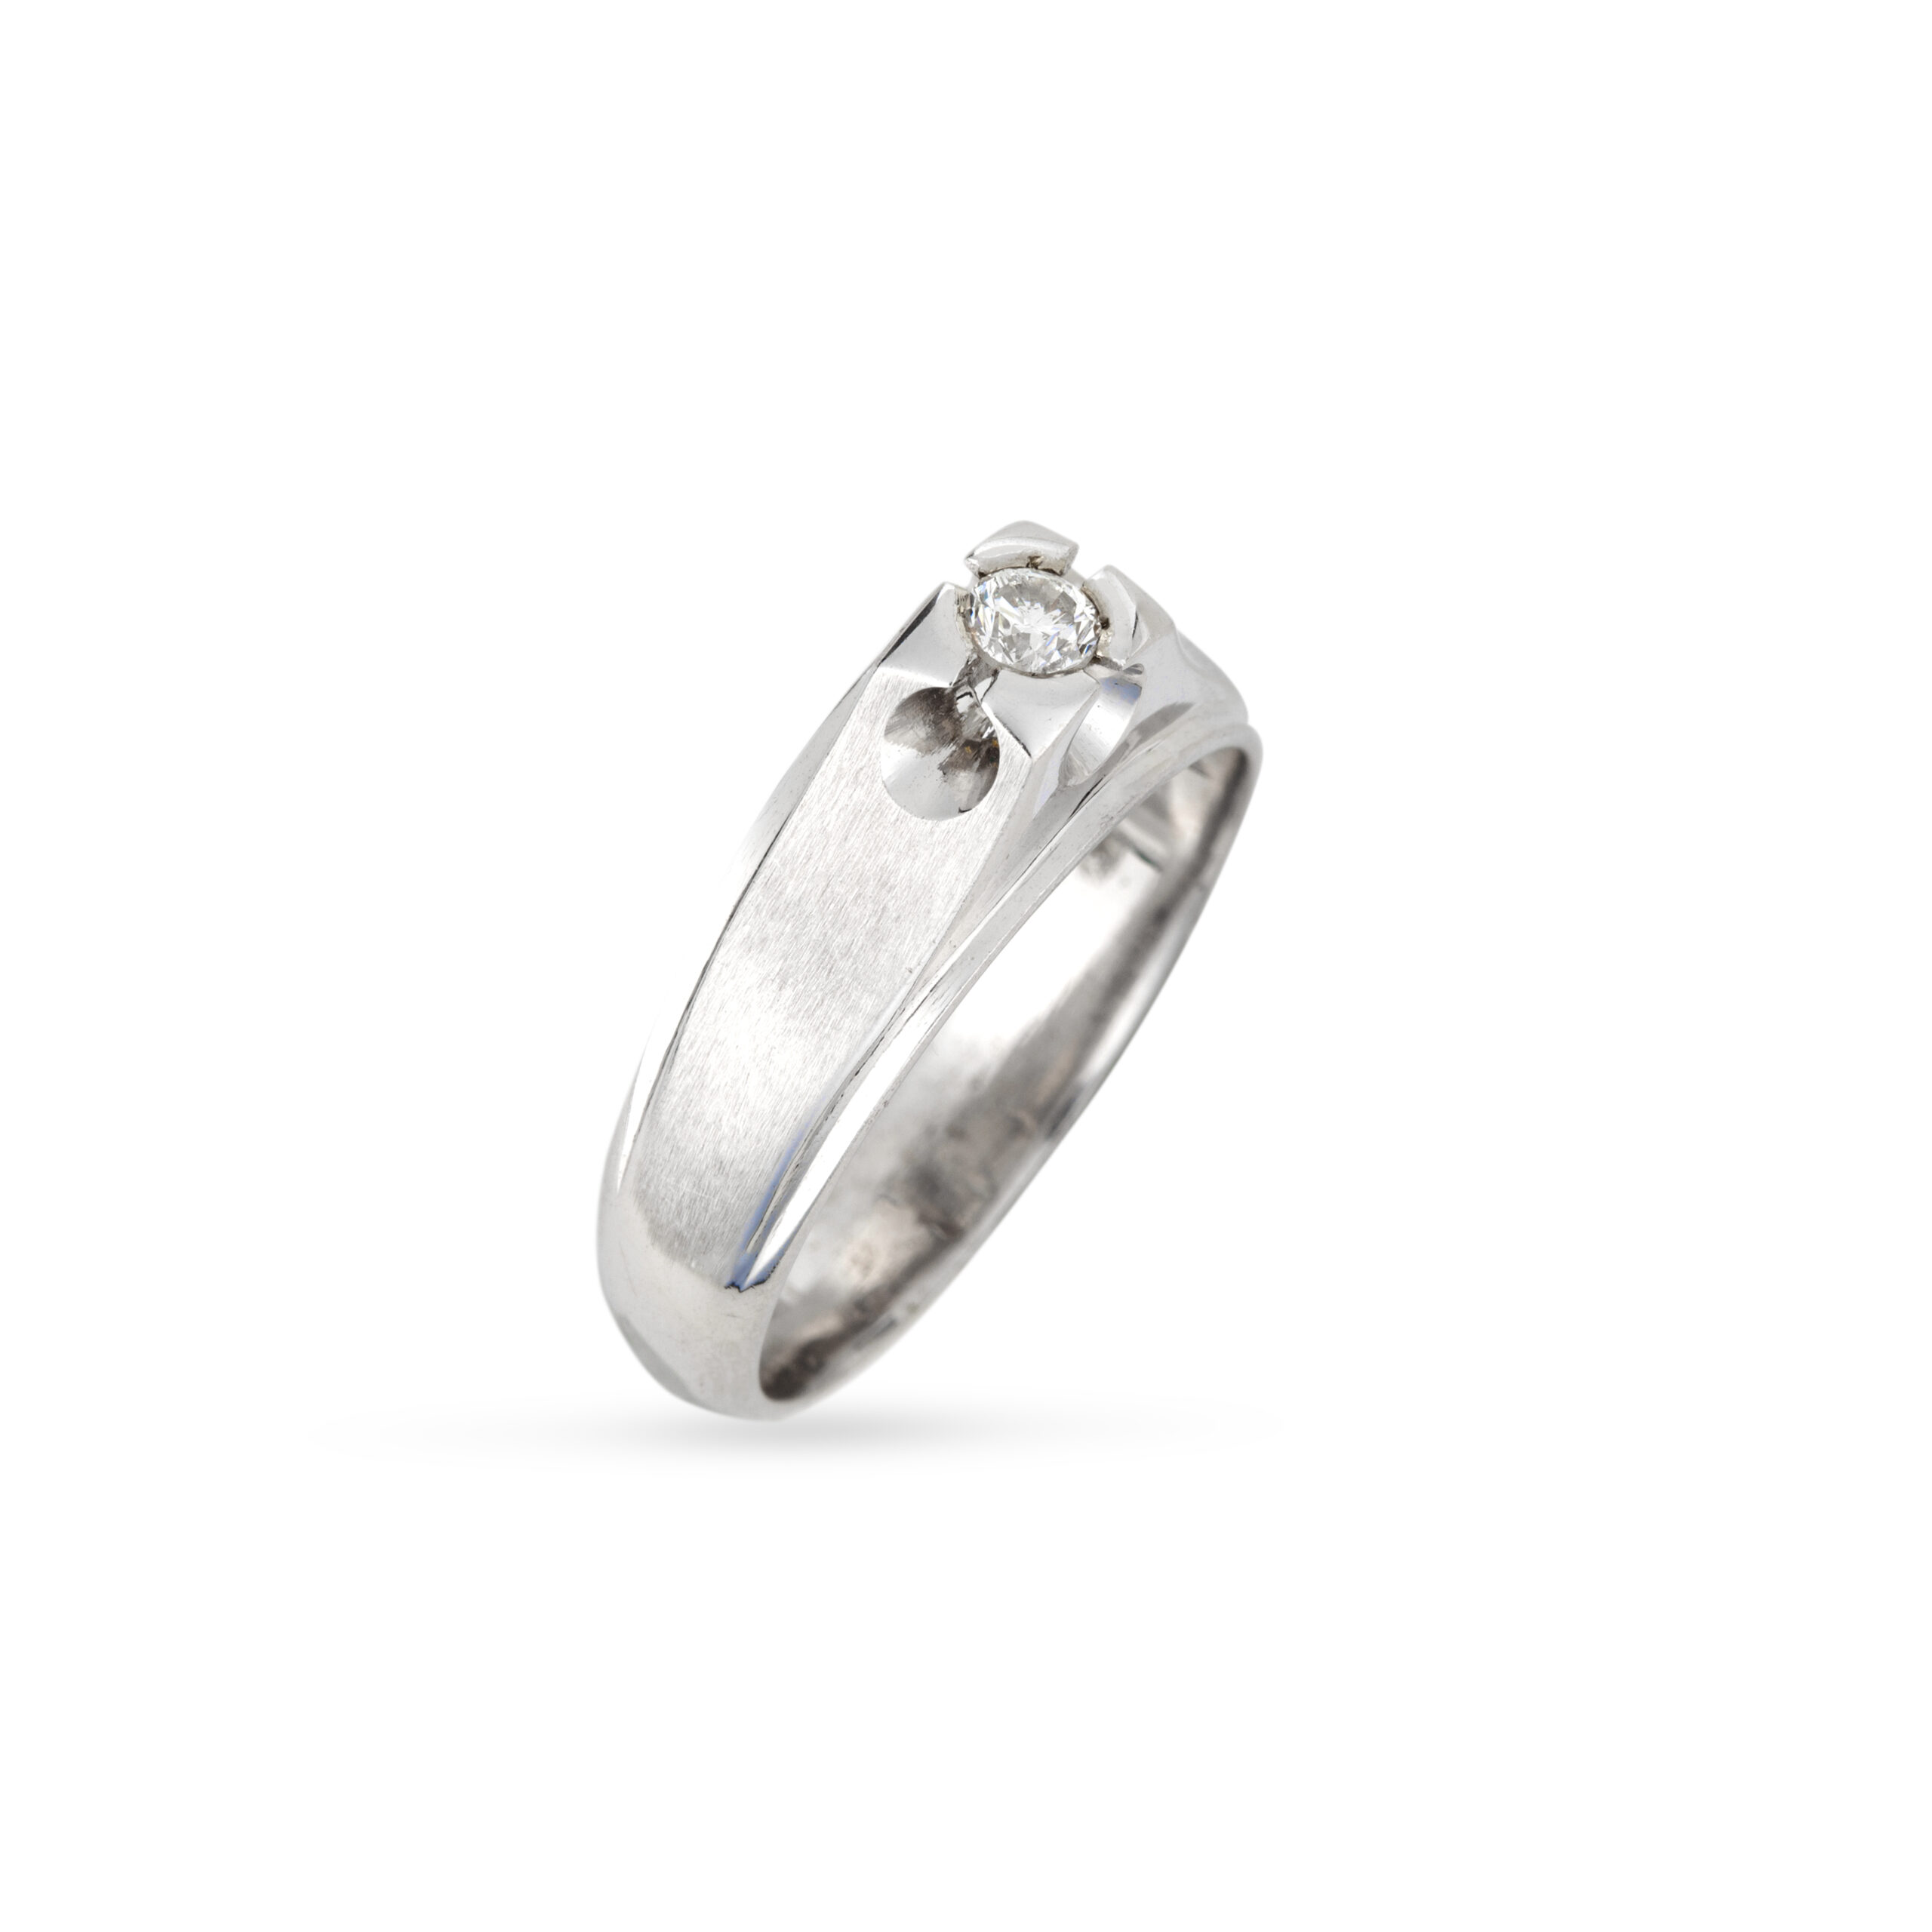 Ανδρικό δαχτυλίδι απο λευκό χρυσό Κ18 με ματ και γυαλιστερό φινίρισμα και ένα στρογγυλό διαμάντι μπριγιάν jack ring